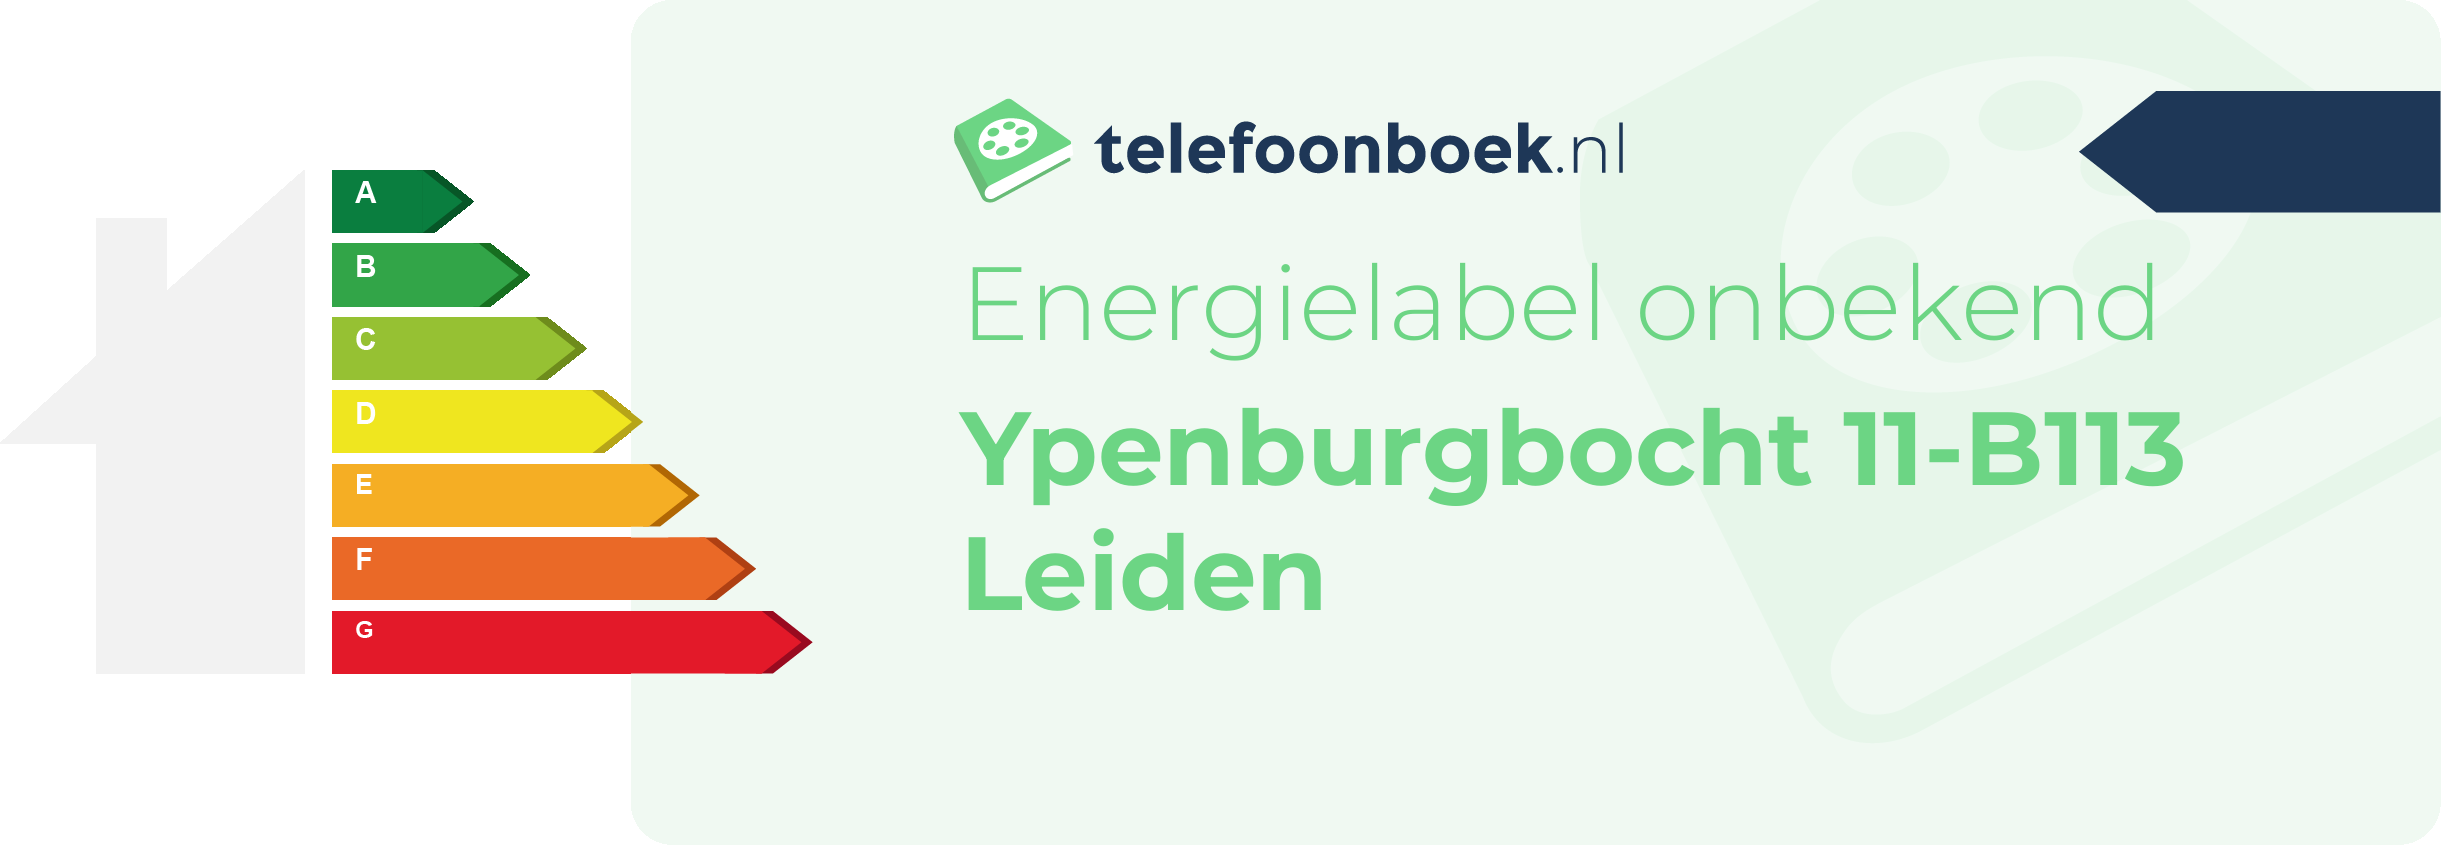 Energielabel Ypenburgbocht 11-B113 Leiden